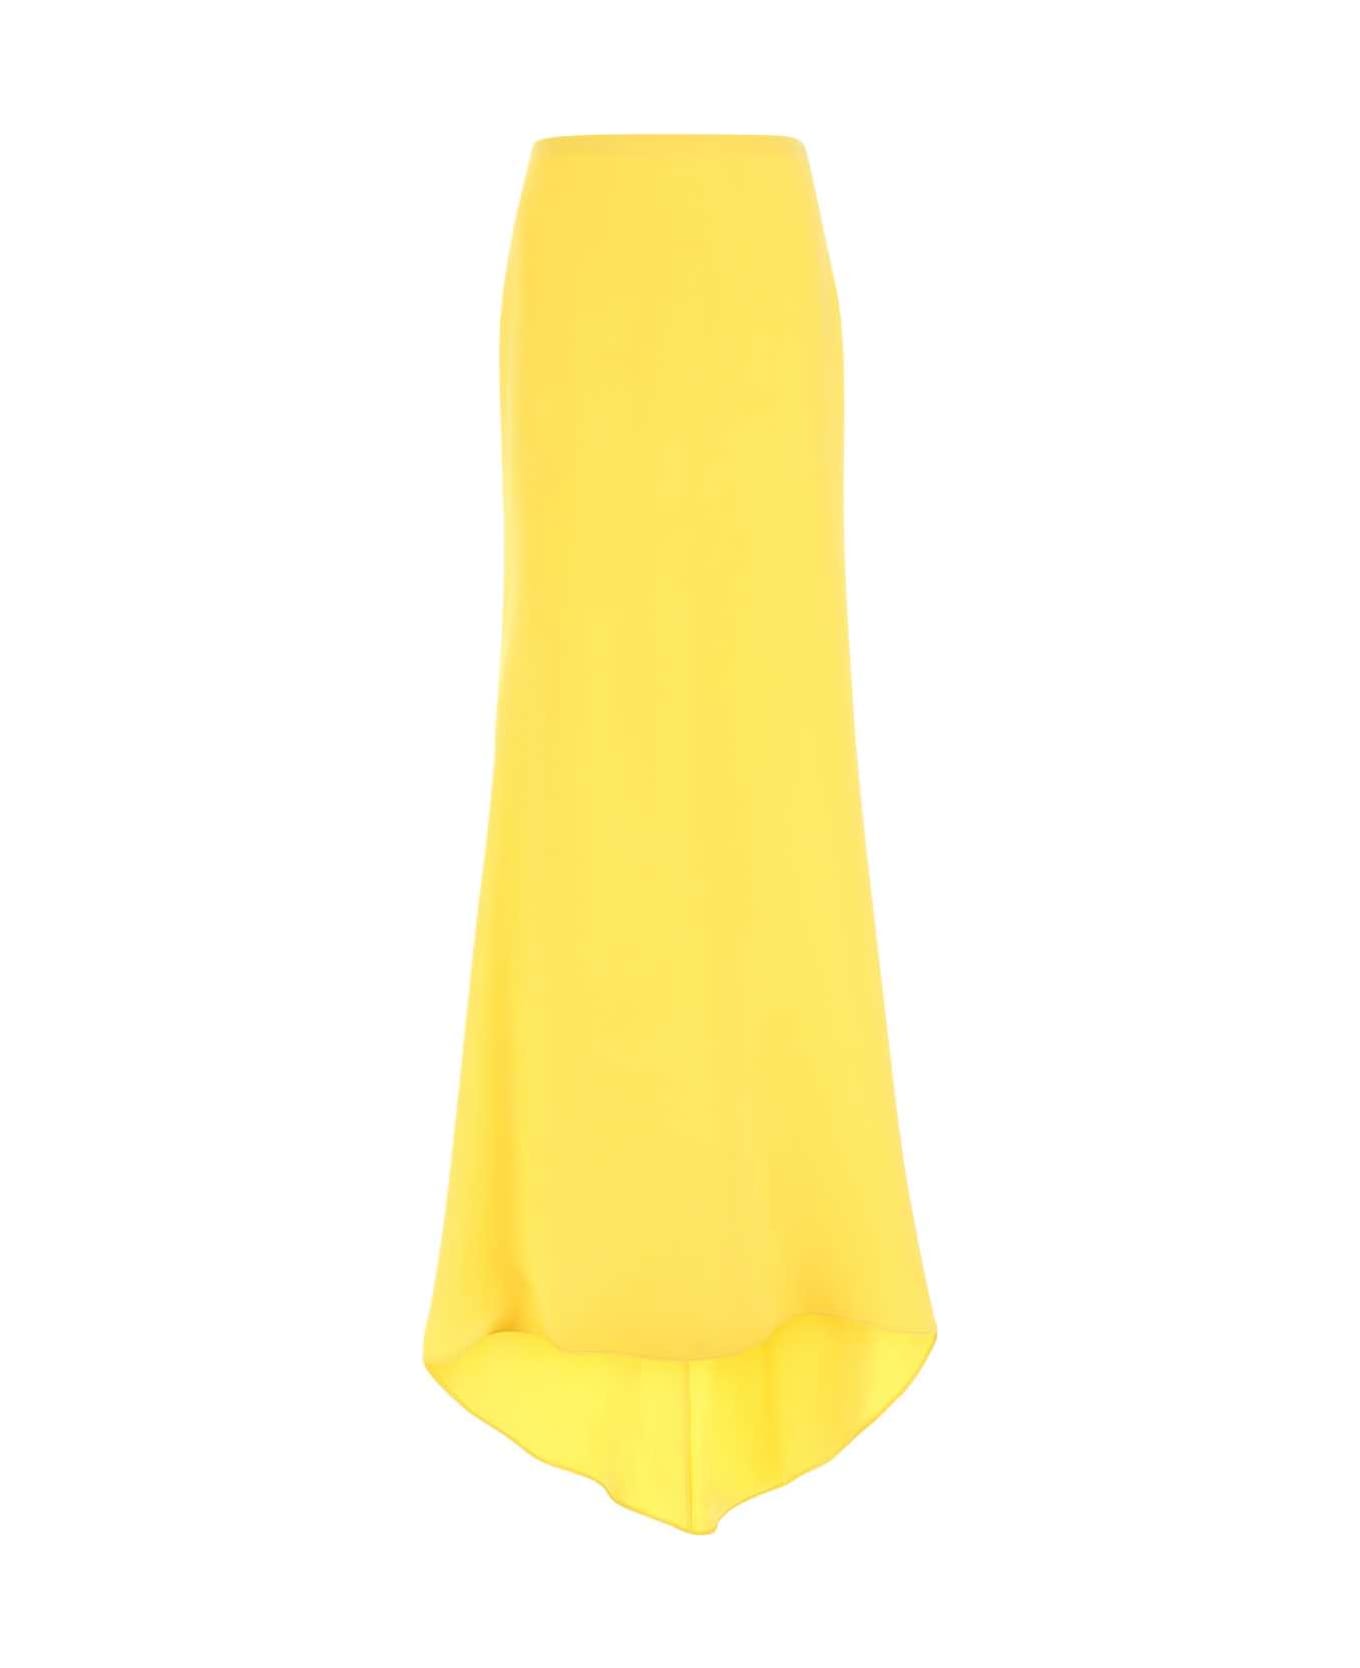 Valentino Garavani Yellow Crepe Skirt - Yellow